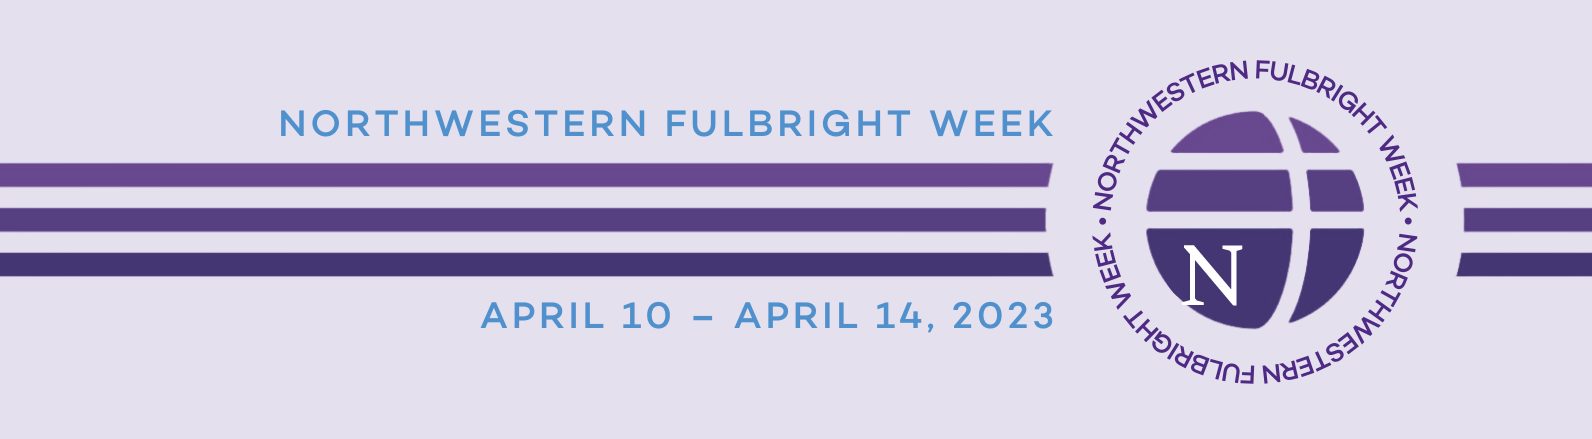 northwestern-fulbright-week-banner-flipped-purple-bckgrnd-v2.png